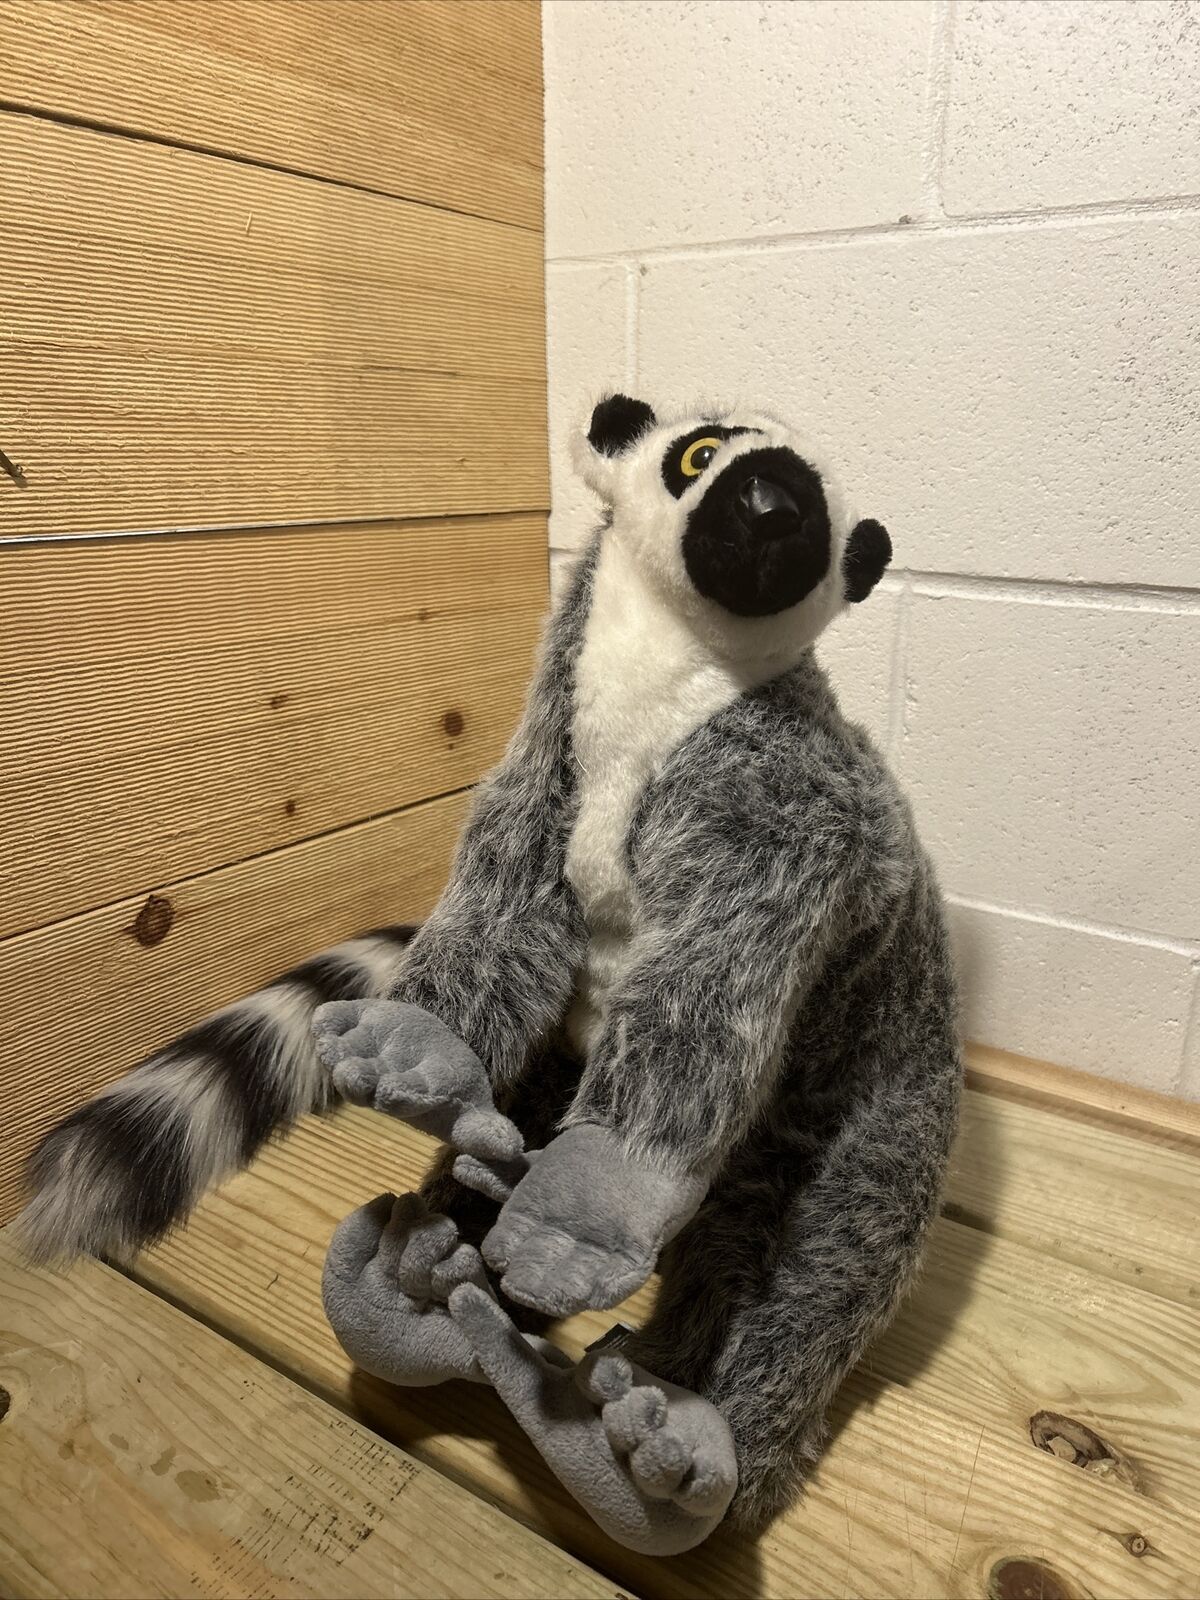 Melissa and Doug 8809 Lemur Plush Stuffed Large Life-Like & Lifesize